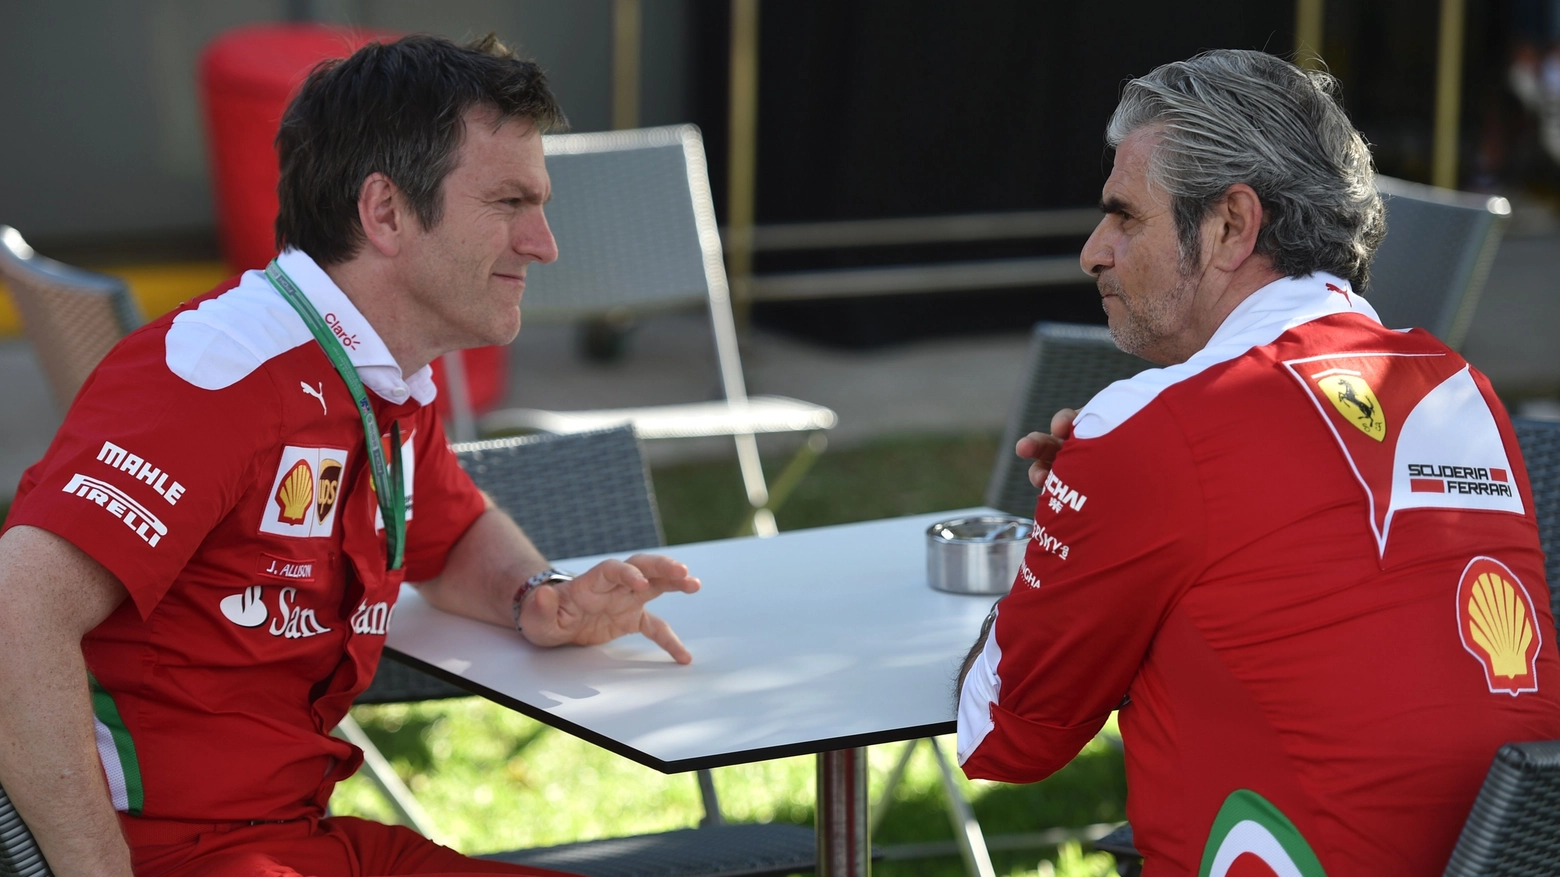  Maurizio Arrivabene con James Allison quando ancora era in Ferrari (AFP)